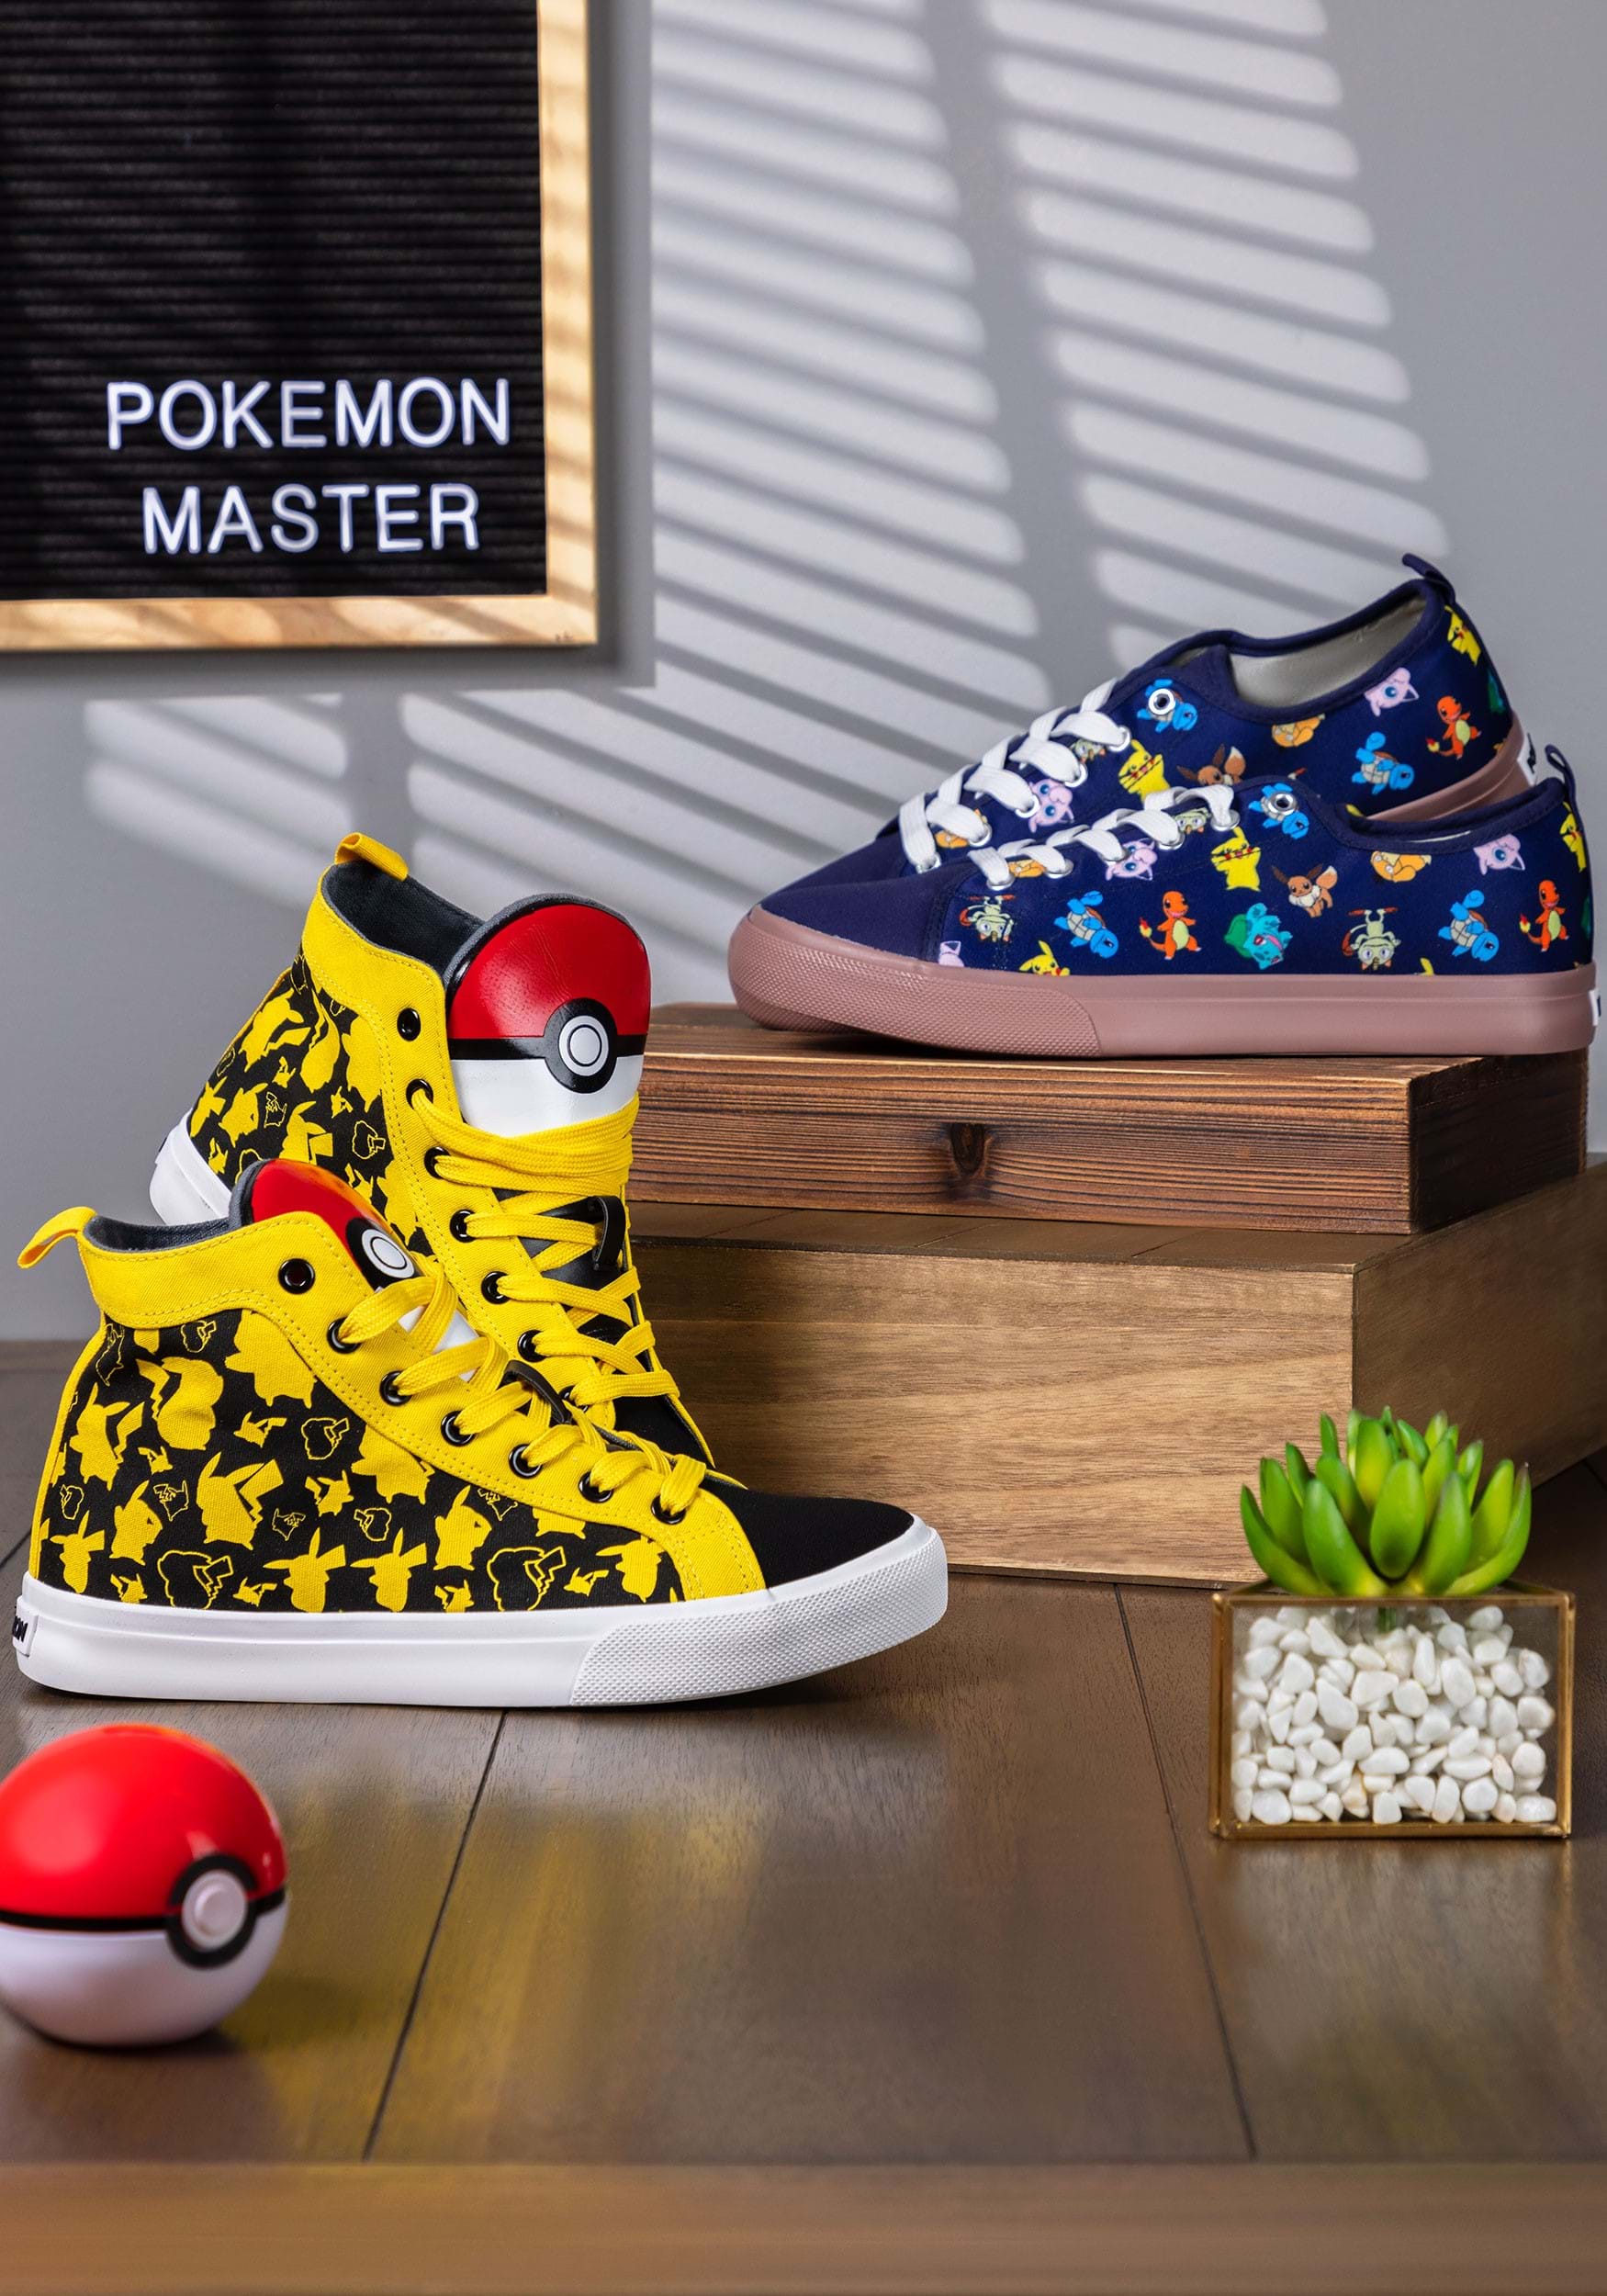 Adult Pokémon Pikachu High Top Shoes , Pokémon Accessories